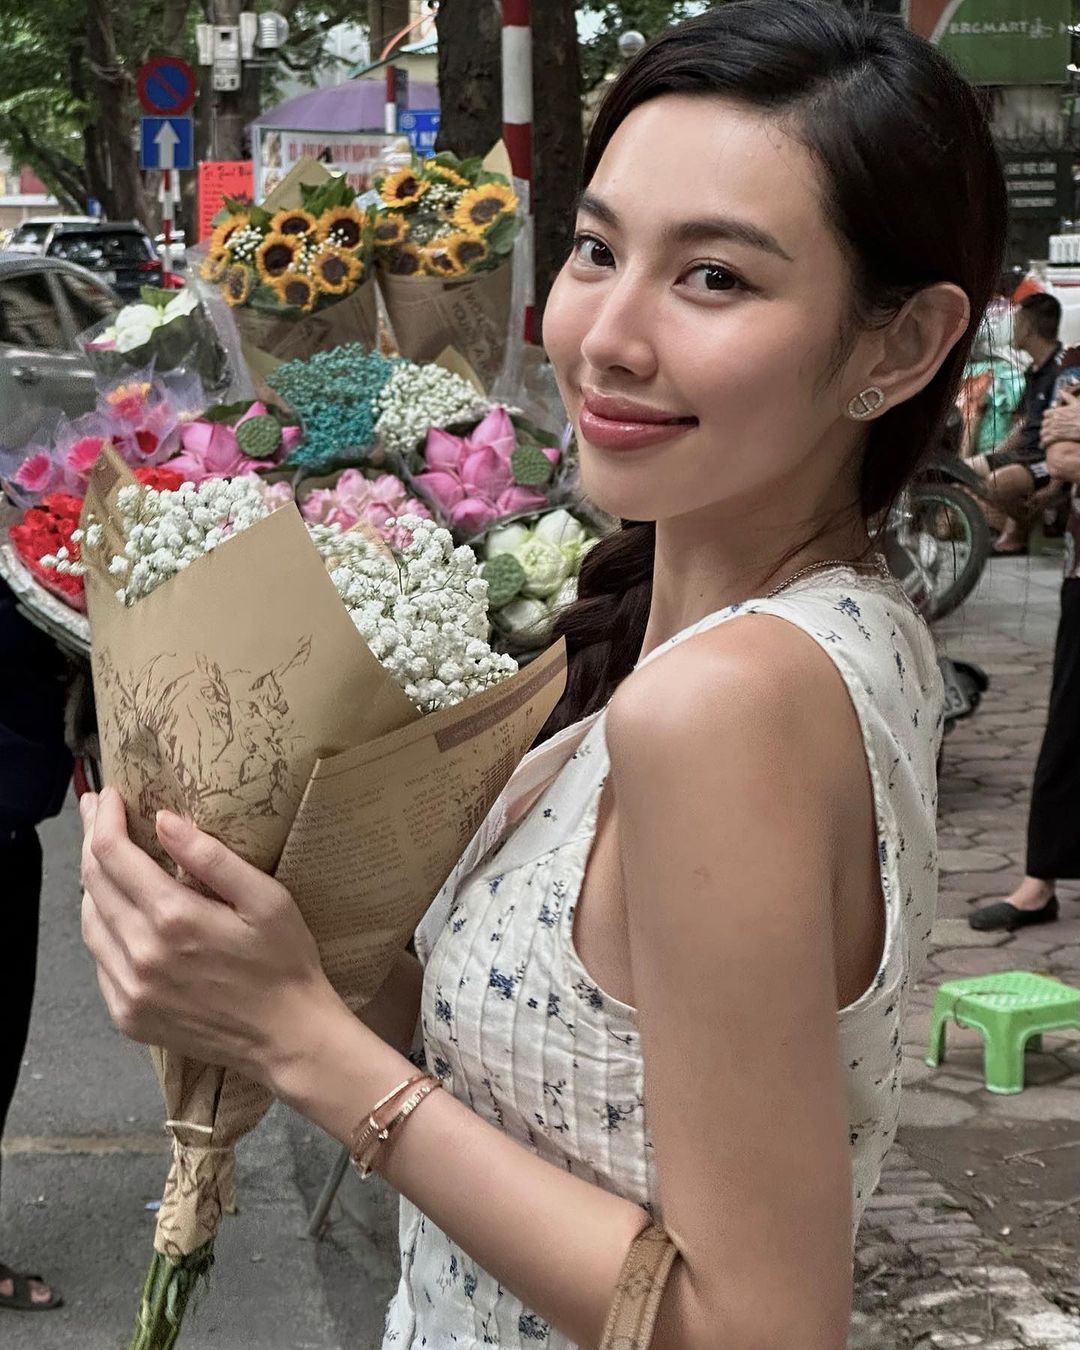 Hoa hậu Thùy Tiên tranh thủ đi chụp ảnh với xe hoa trong chuyến công tác Hà Nội. Khác với hình ảnh quyền lực, sắc sảo tại các sự kiện, Thùy Tiên ở ngoài đời giản dị và gần gũi hơn rất nhiều.